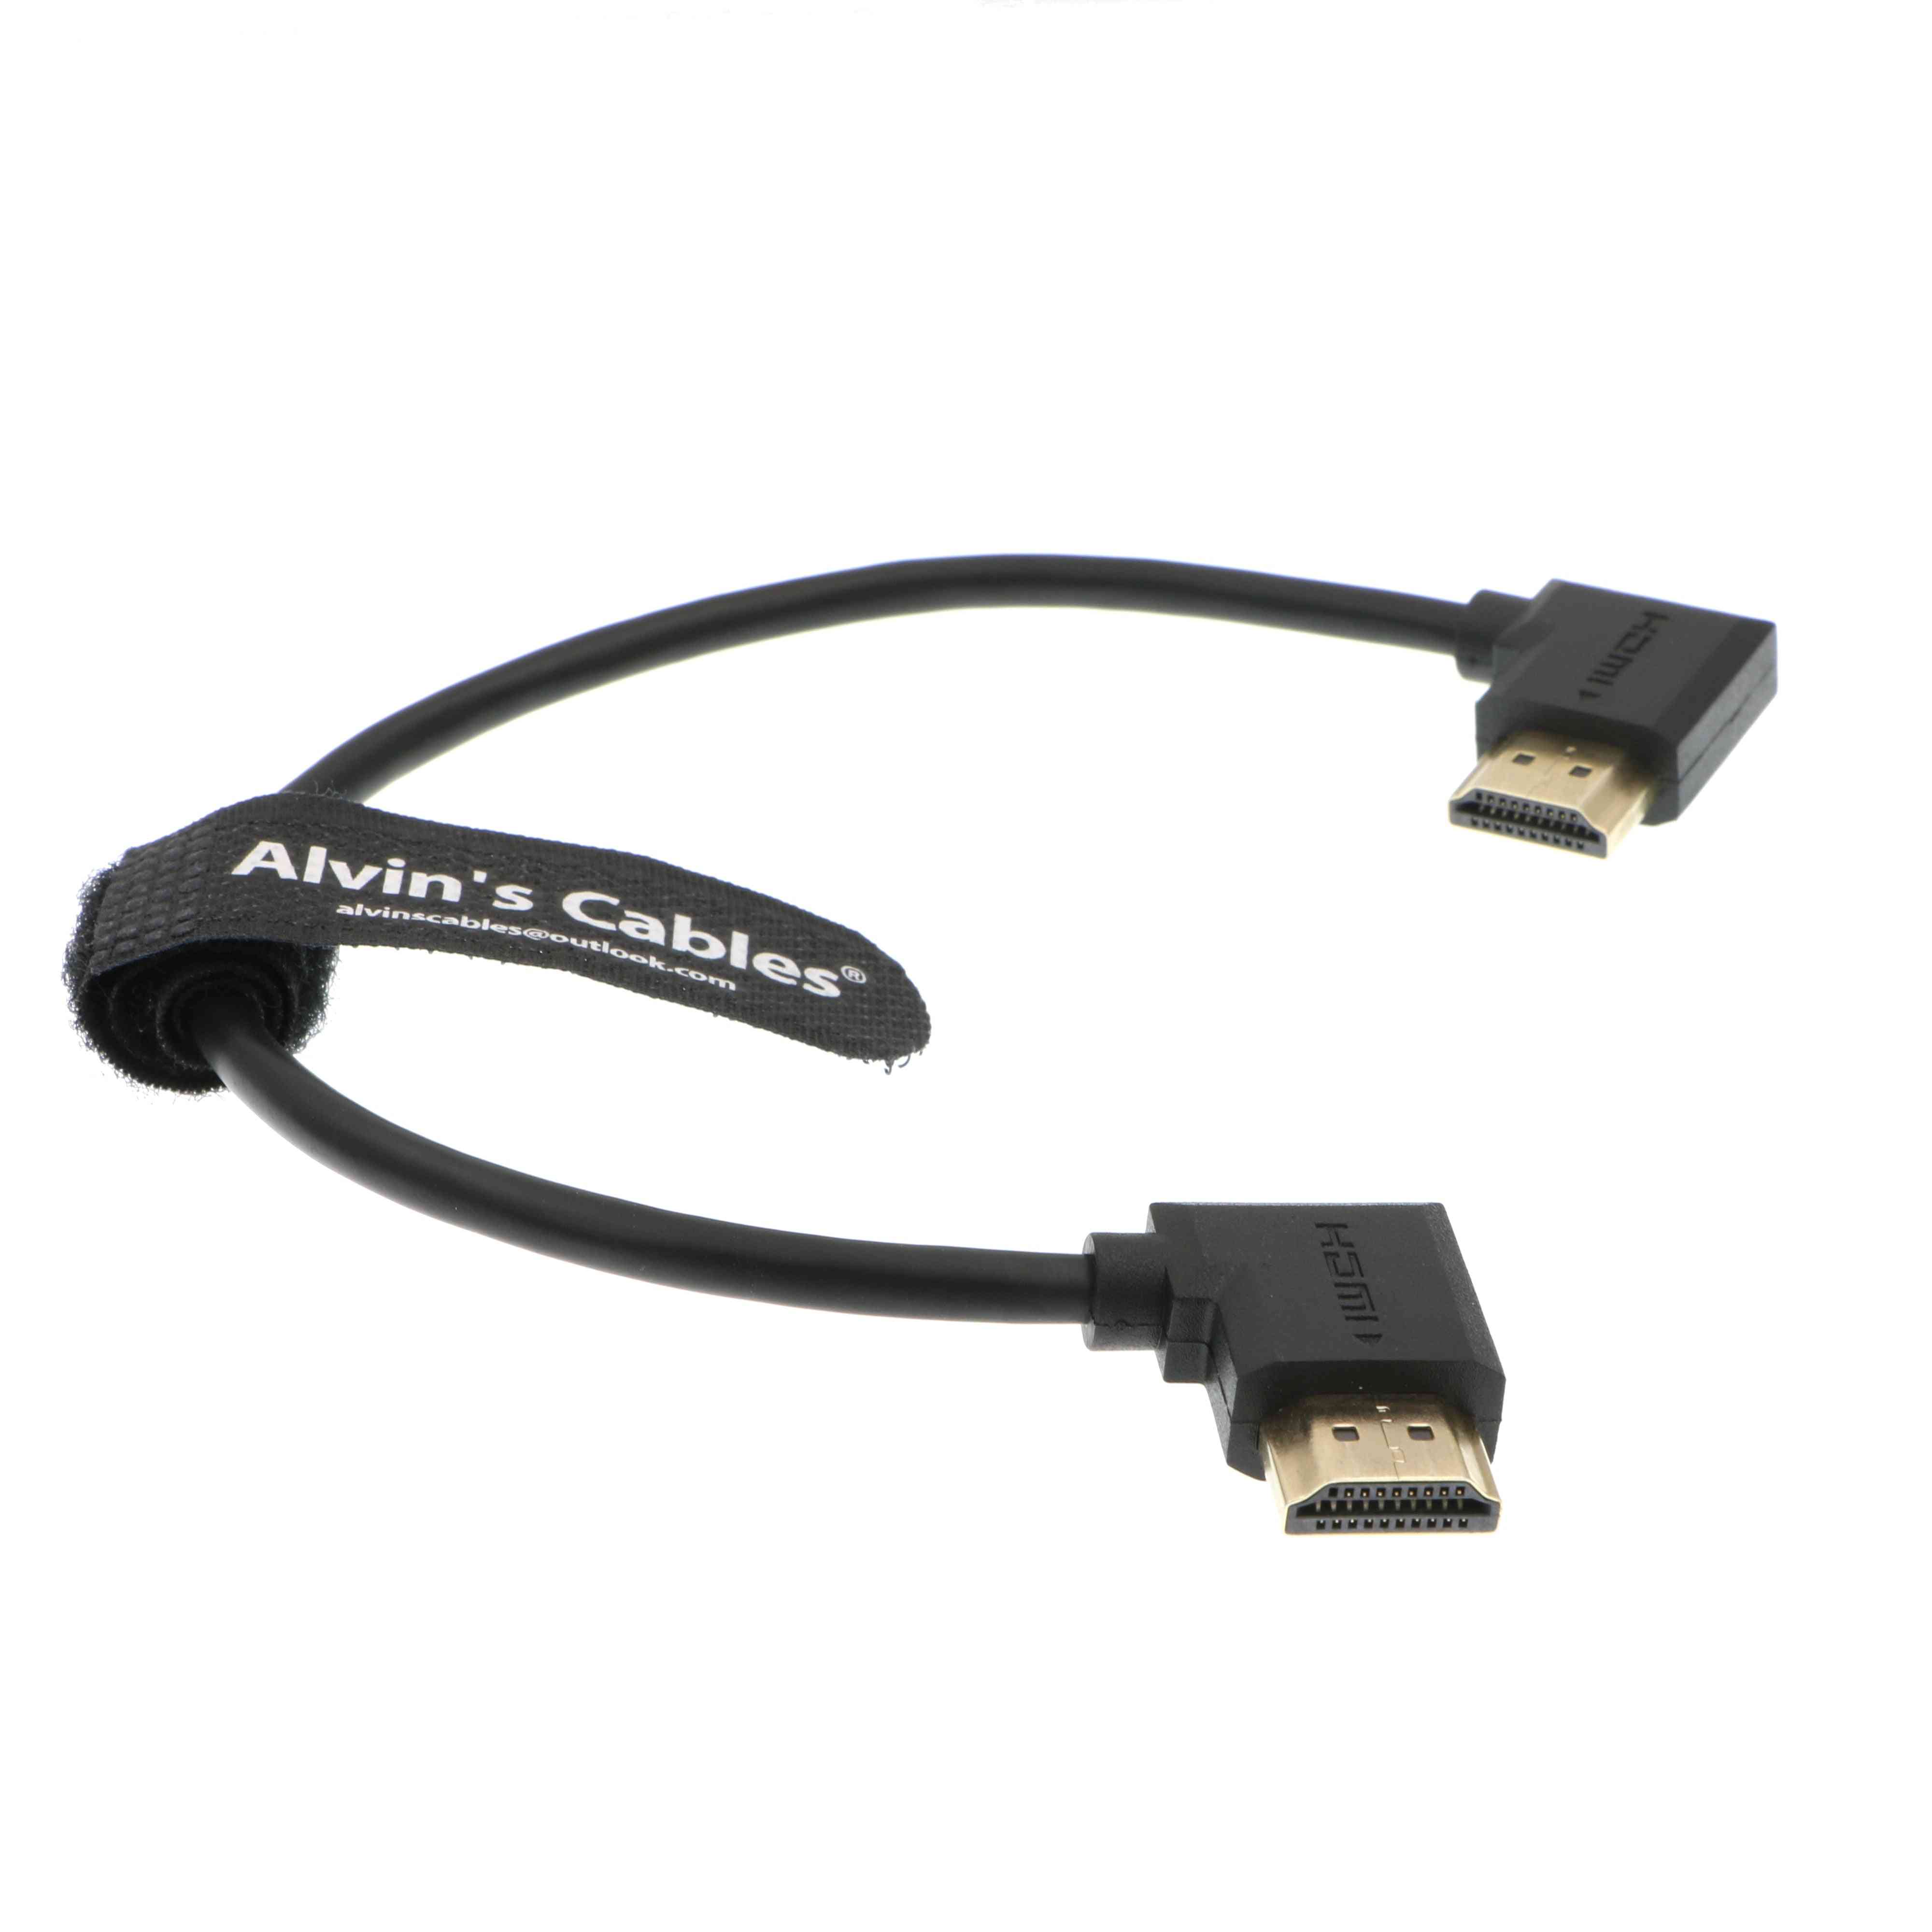 Alvin's kabler z cam e2 l form hdmi kabel retvinklet højhastigheds hdmi ledning til portkeys bm5 skærm - 30 cm